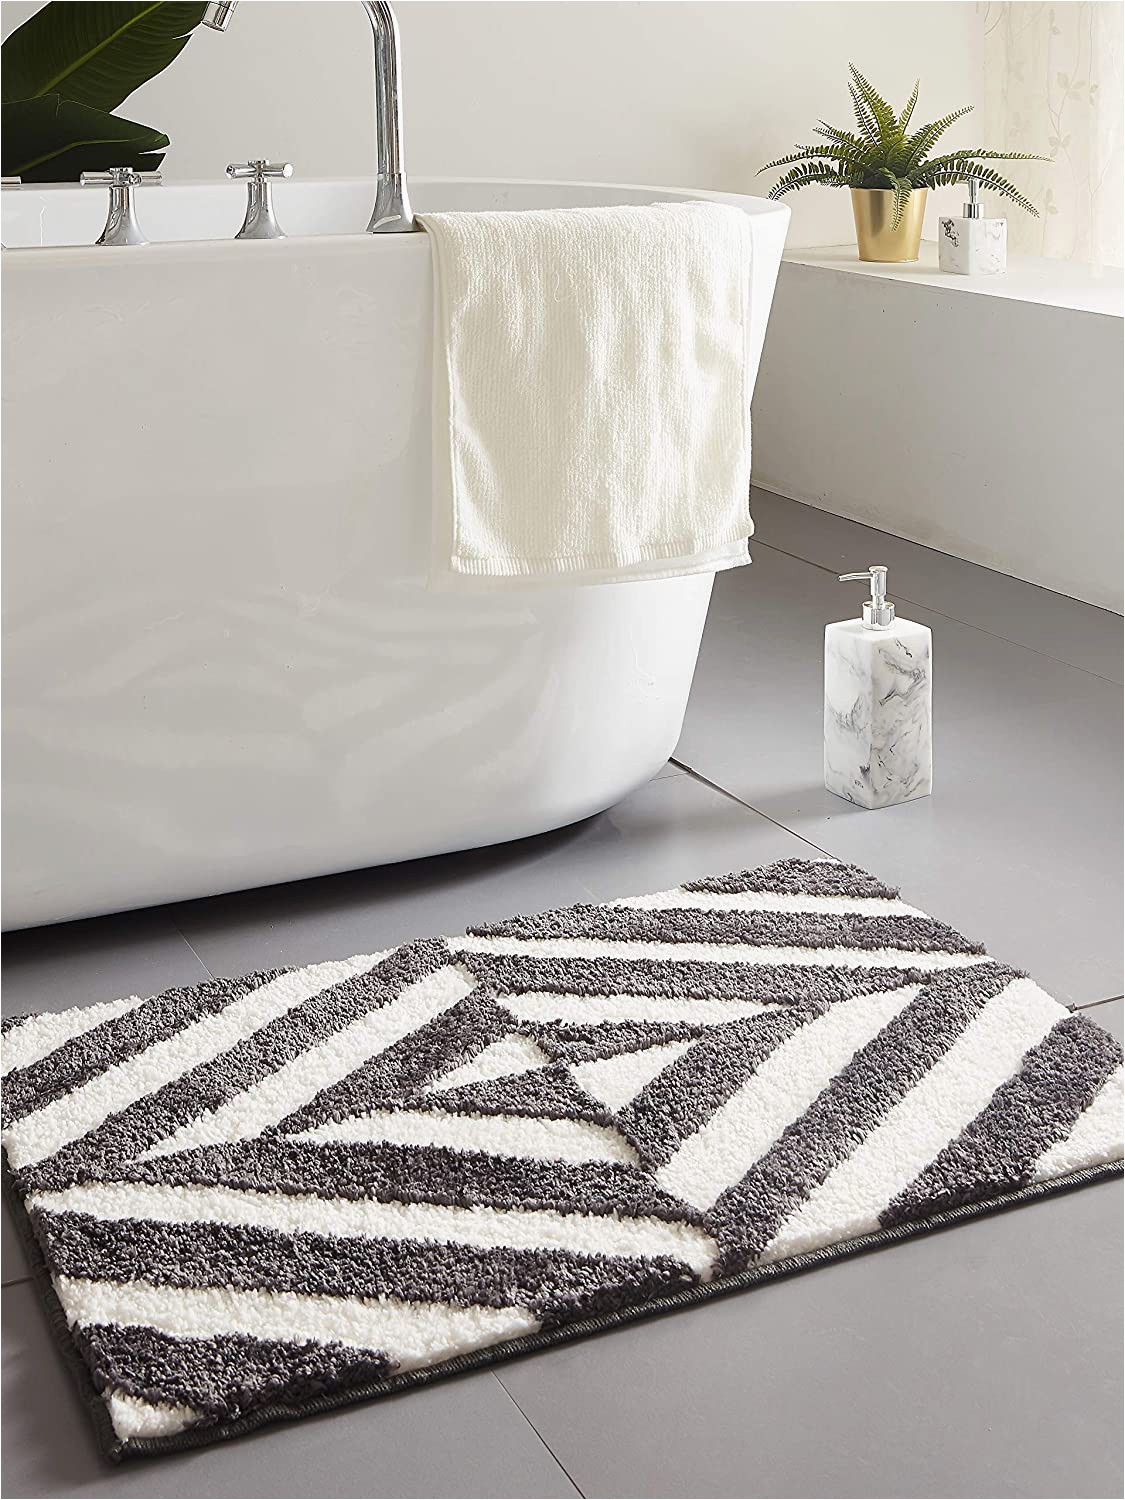 White Fluffy Bath Rug Amazon Desiderare Thick Fluffy Dark Grey Bath Mat 31